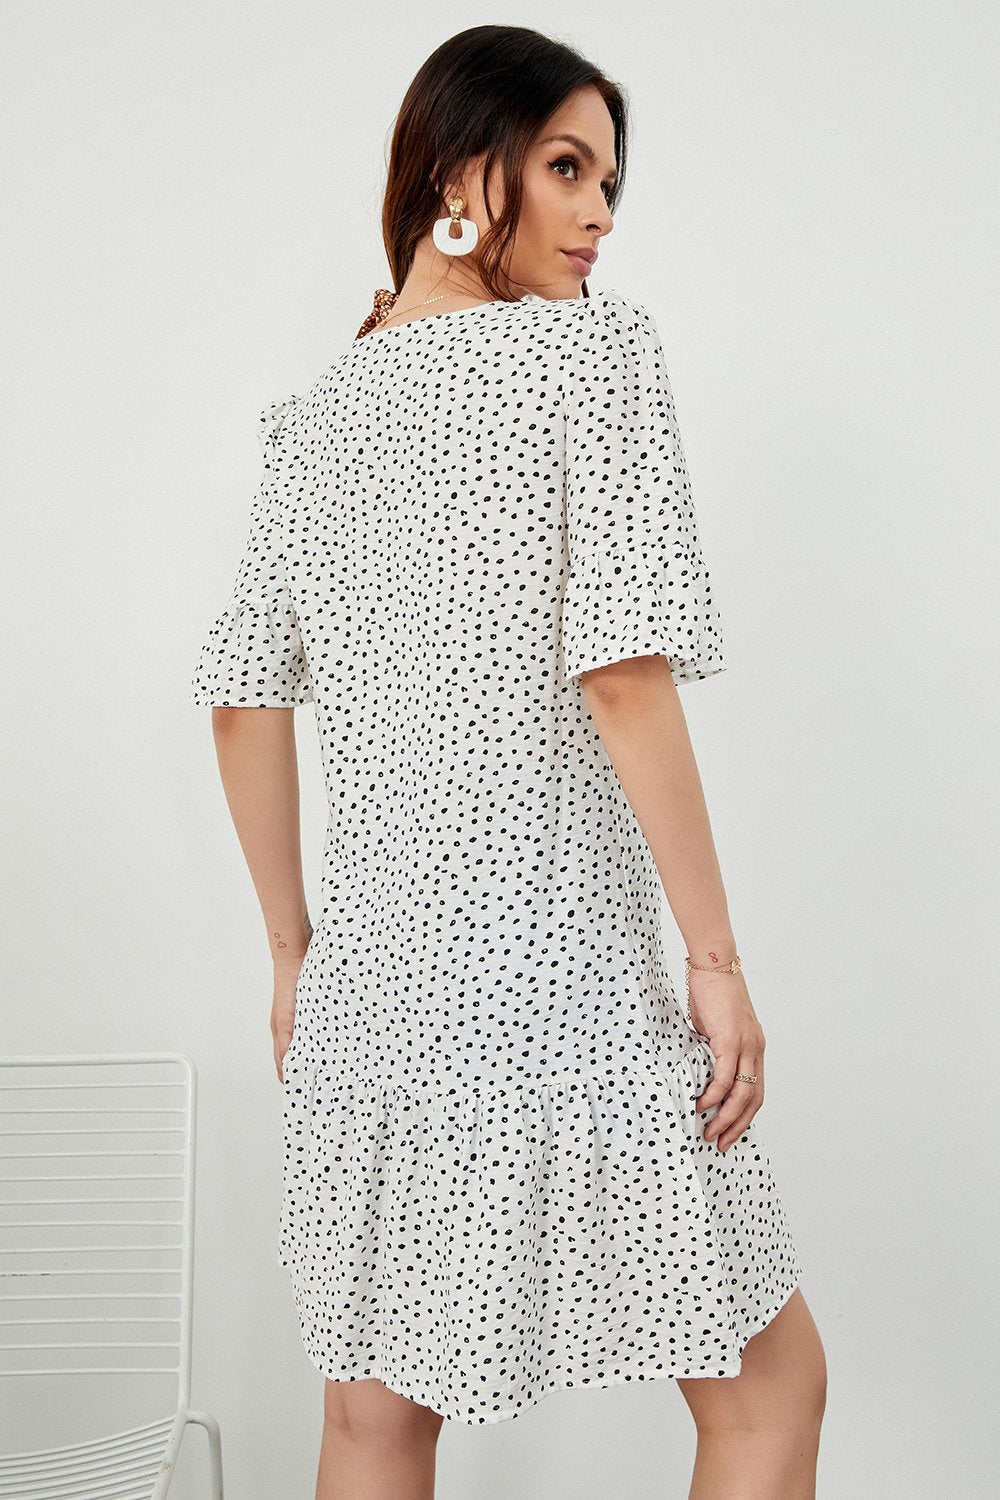 White Polka Dots Summer Dress